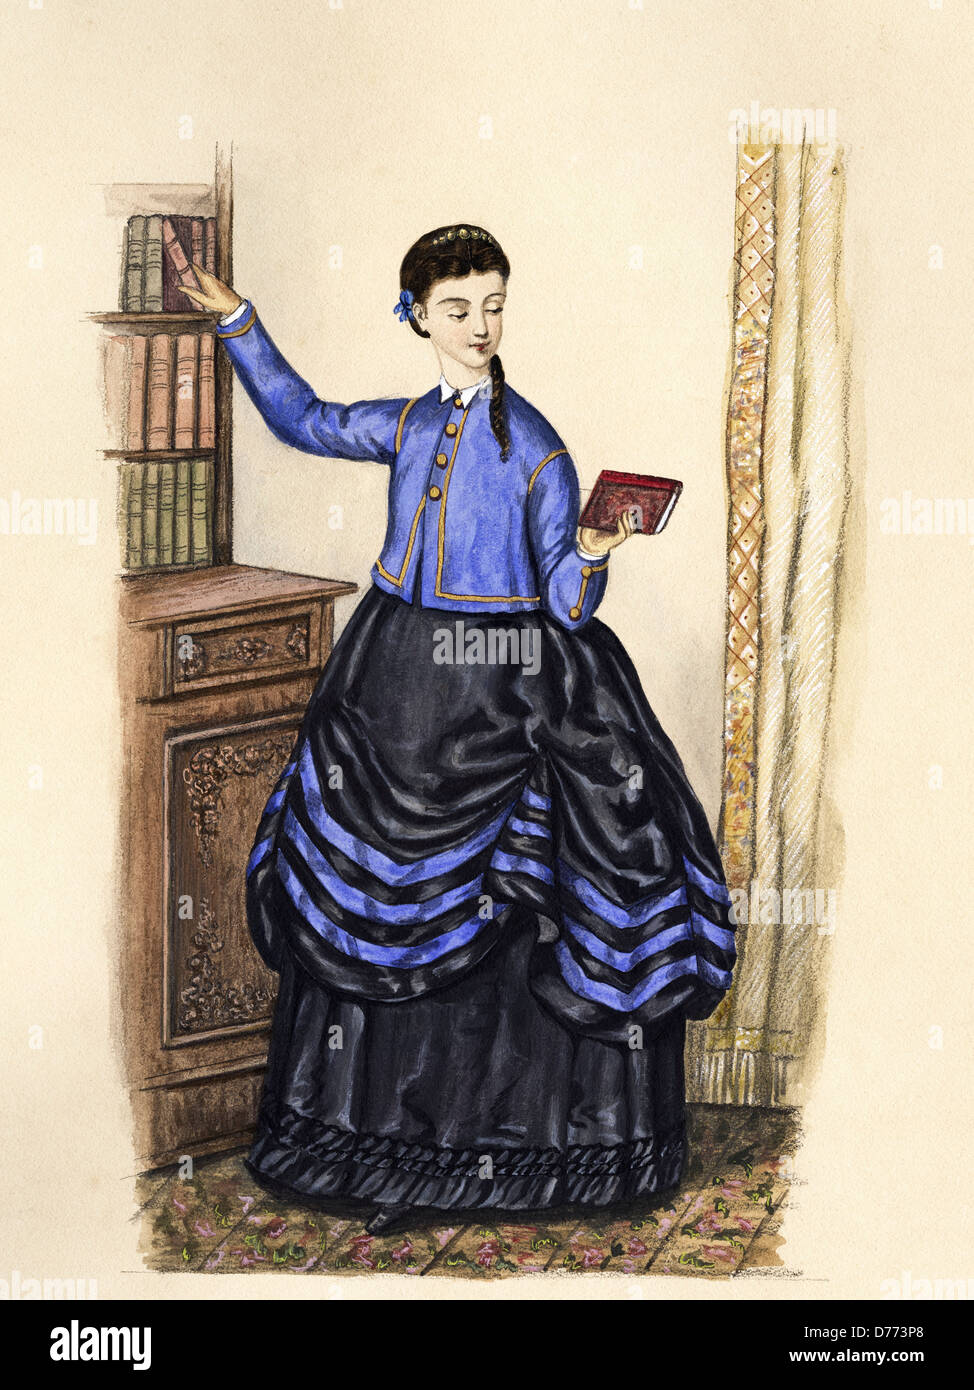 La moda francesa de la época victoriana data de 1870. Pintura acuarela original artista mujer desconocida leyendo libro en la biblioteca. Foto de stock